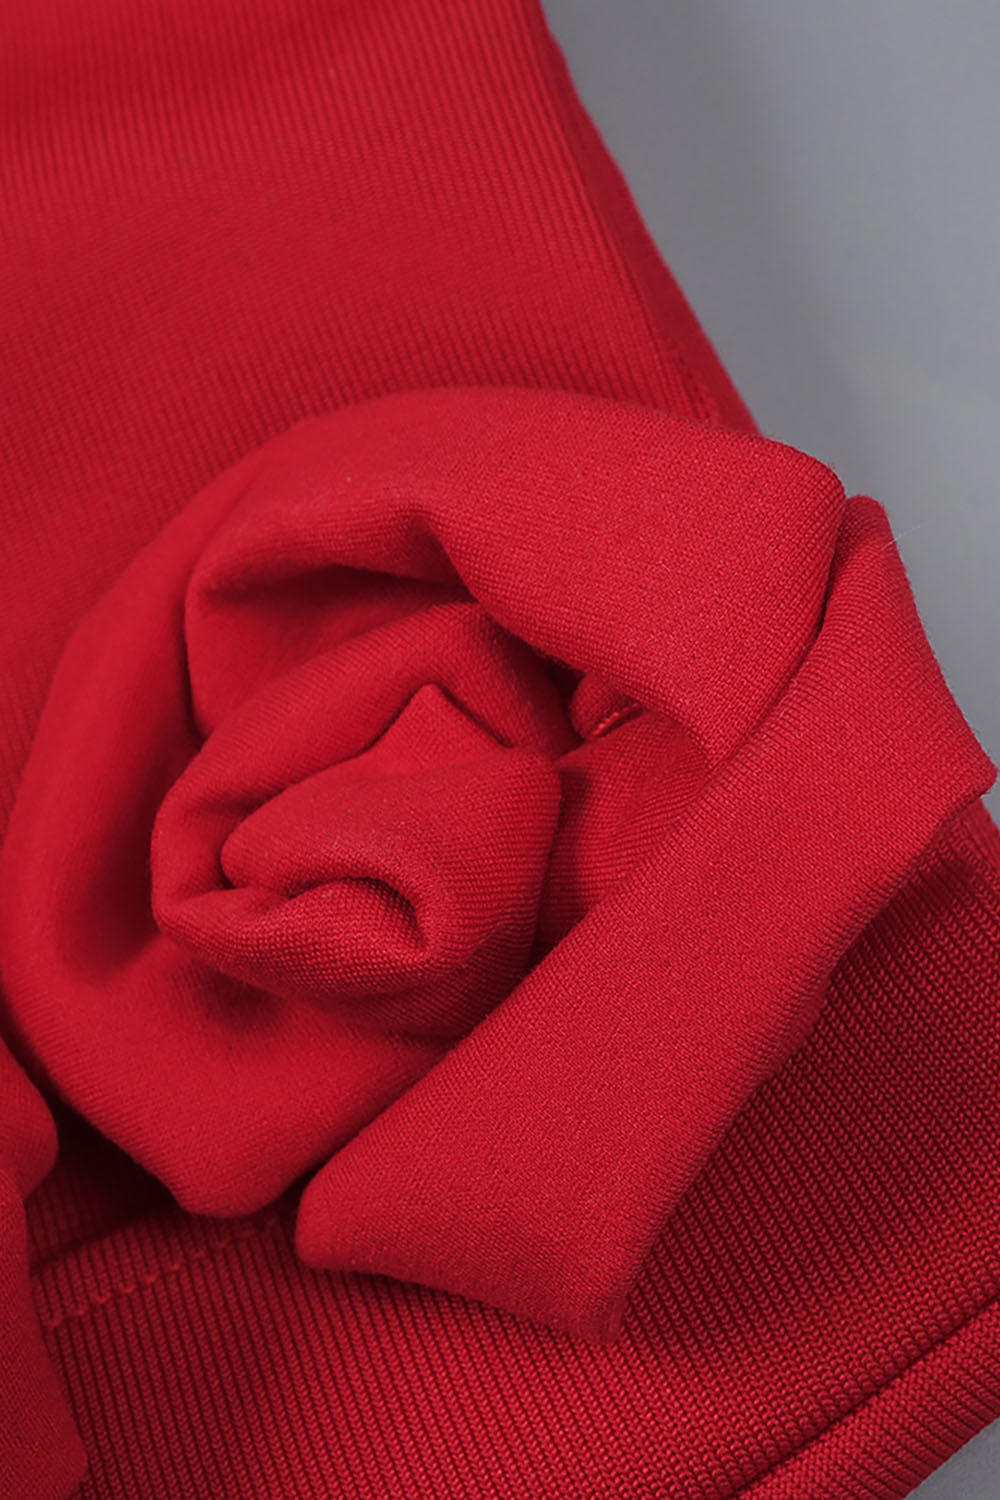 Falda ceñida midi con aberturas y apliques florales en rojo